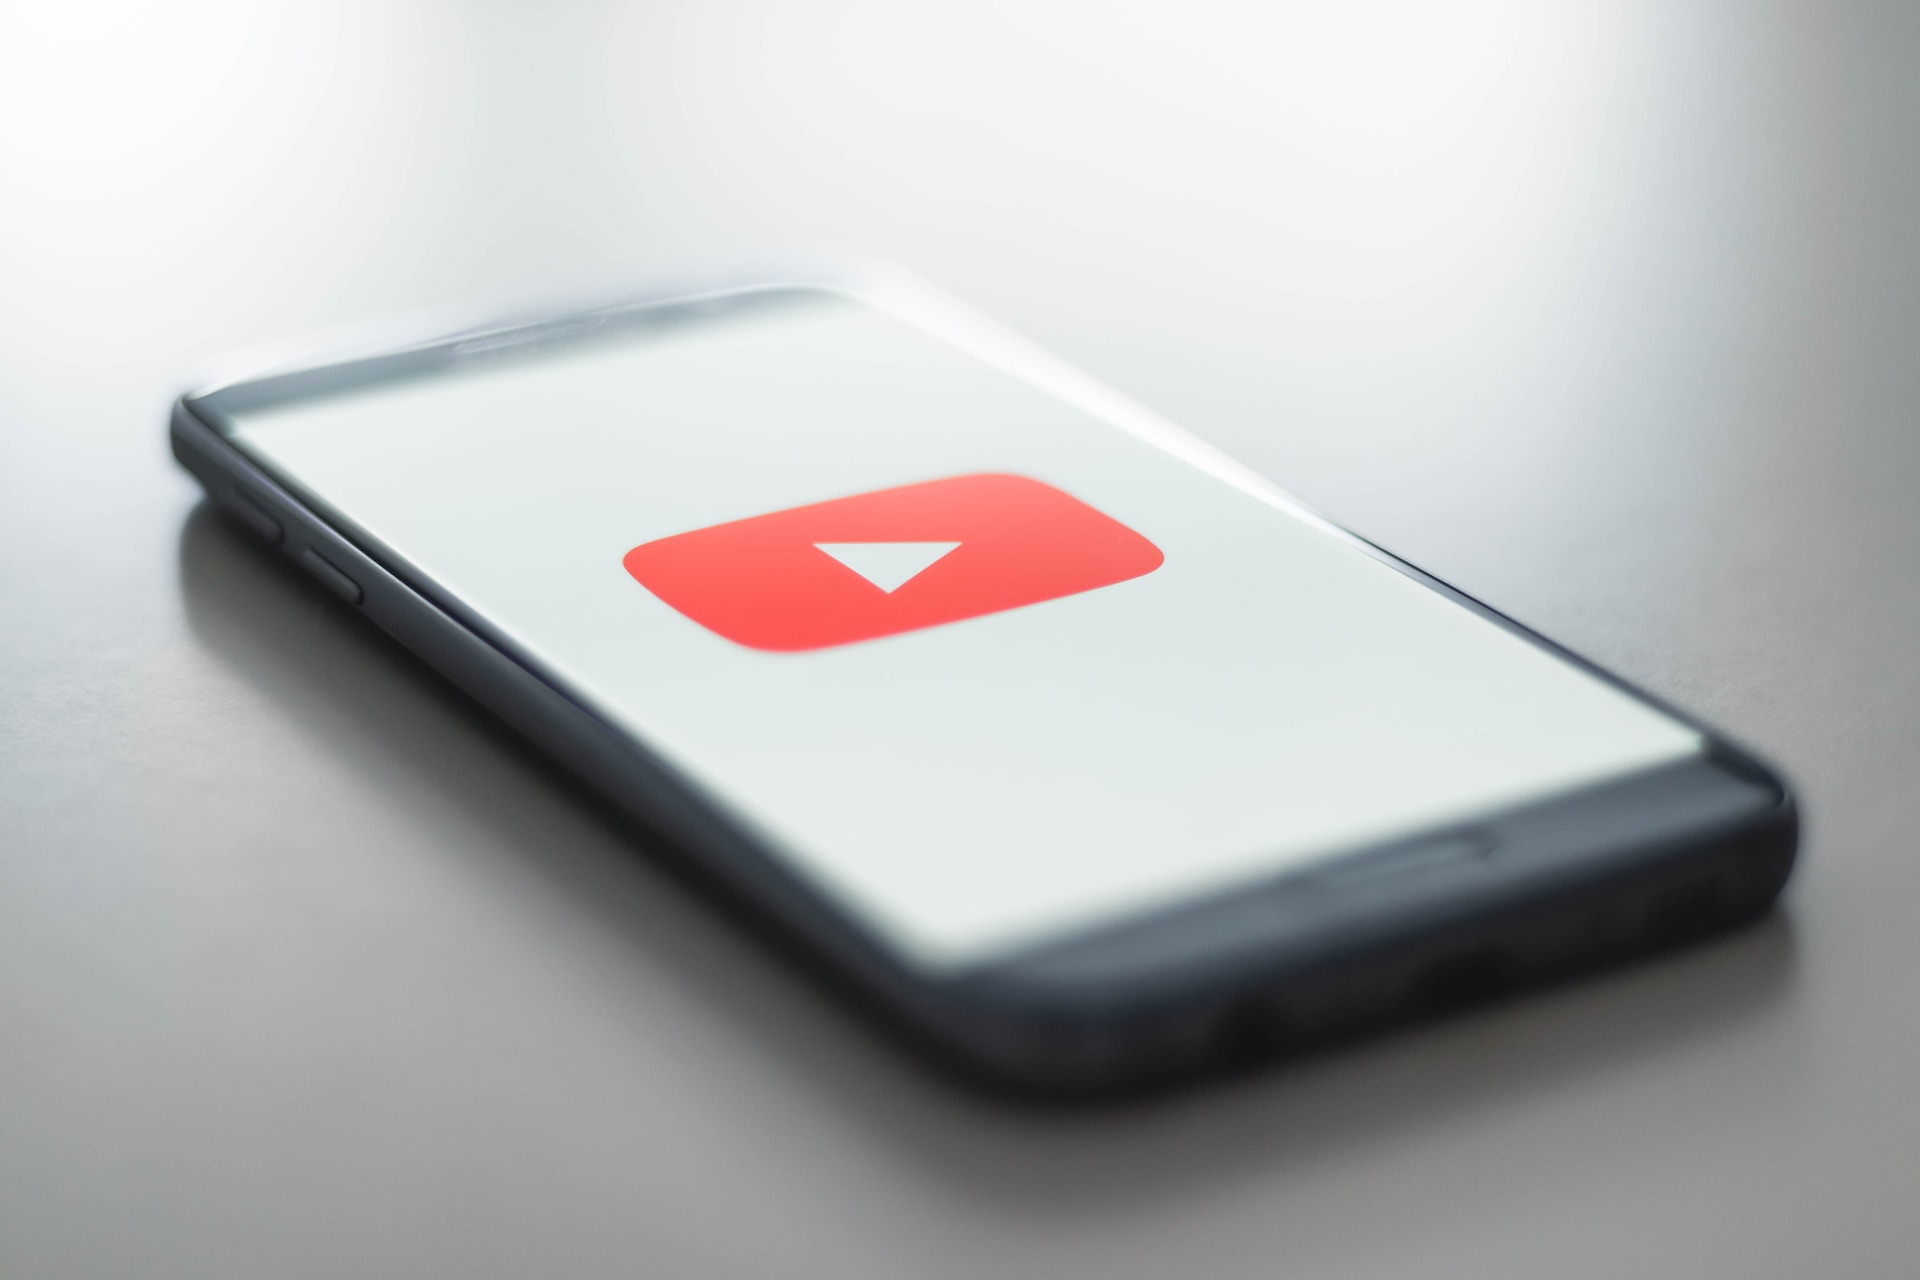 Disinformazione sul clima: Youtube la ignora e guadagna milioni di dollari 